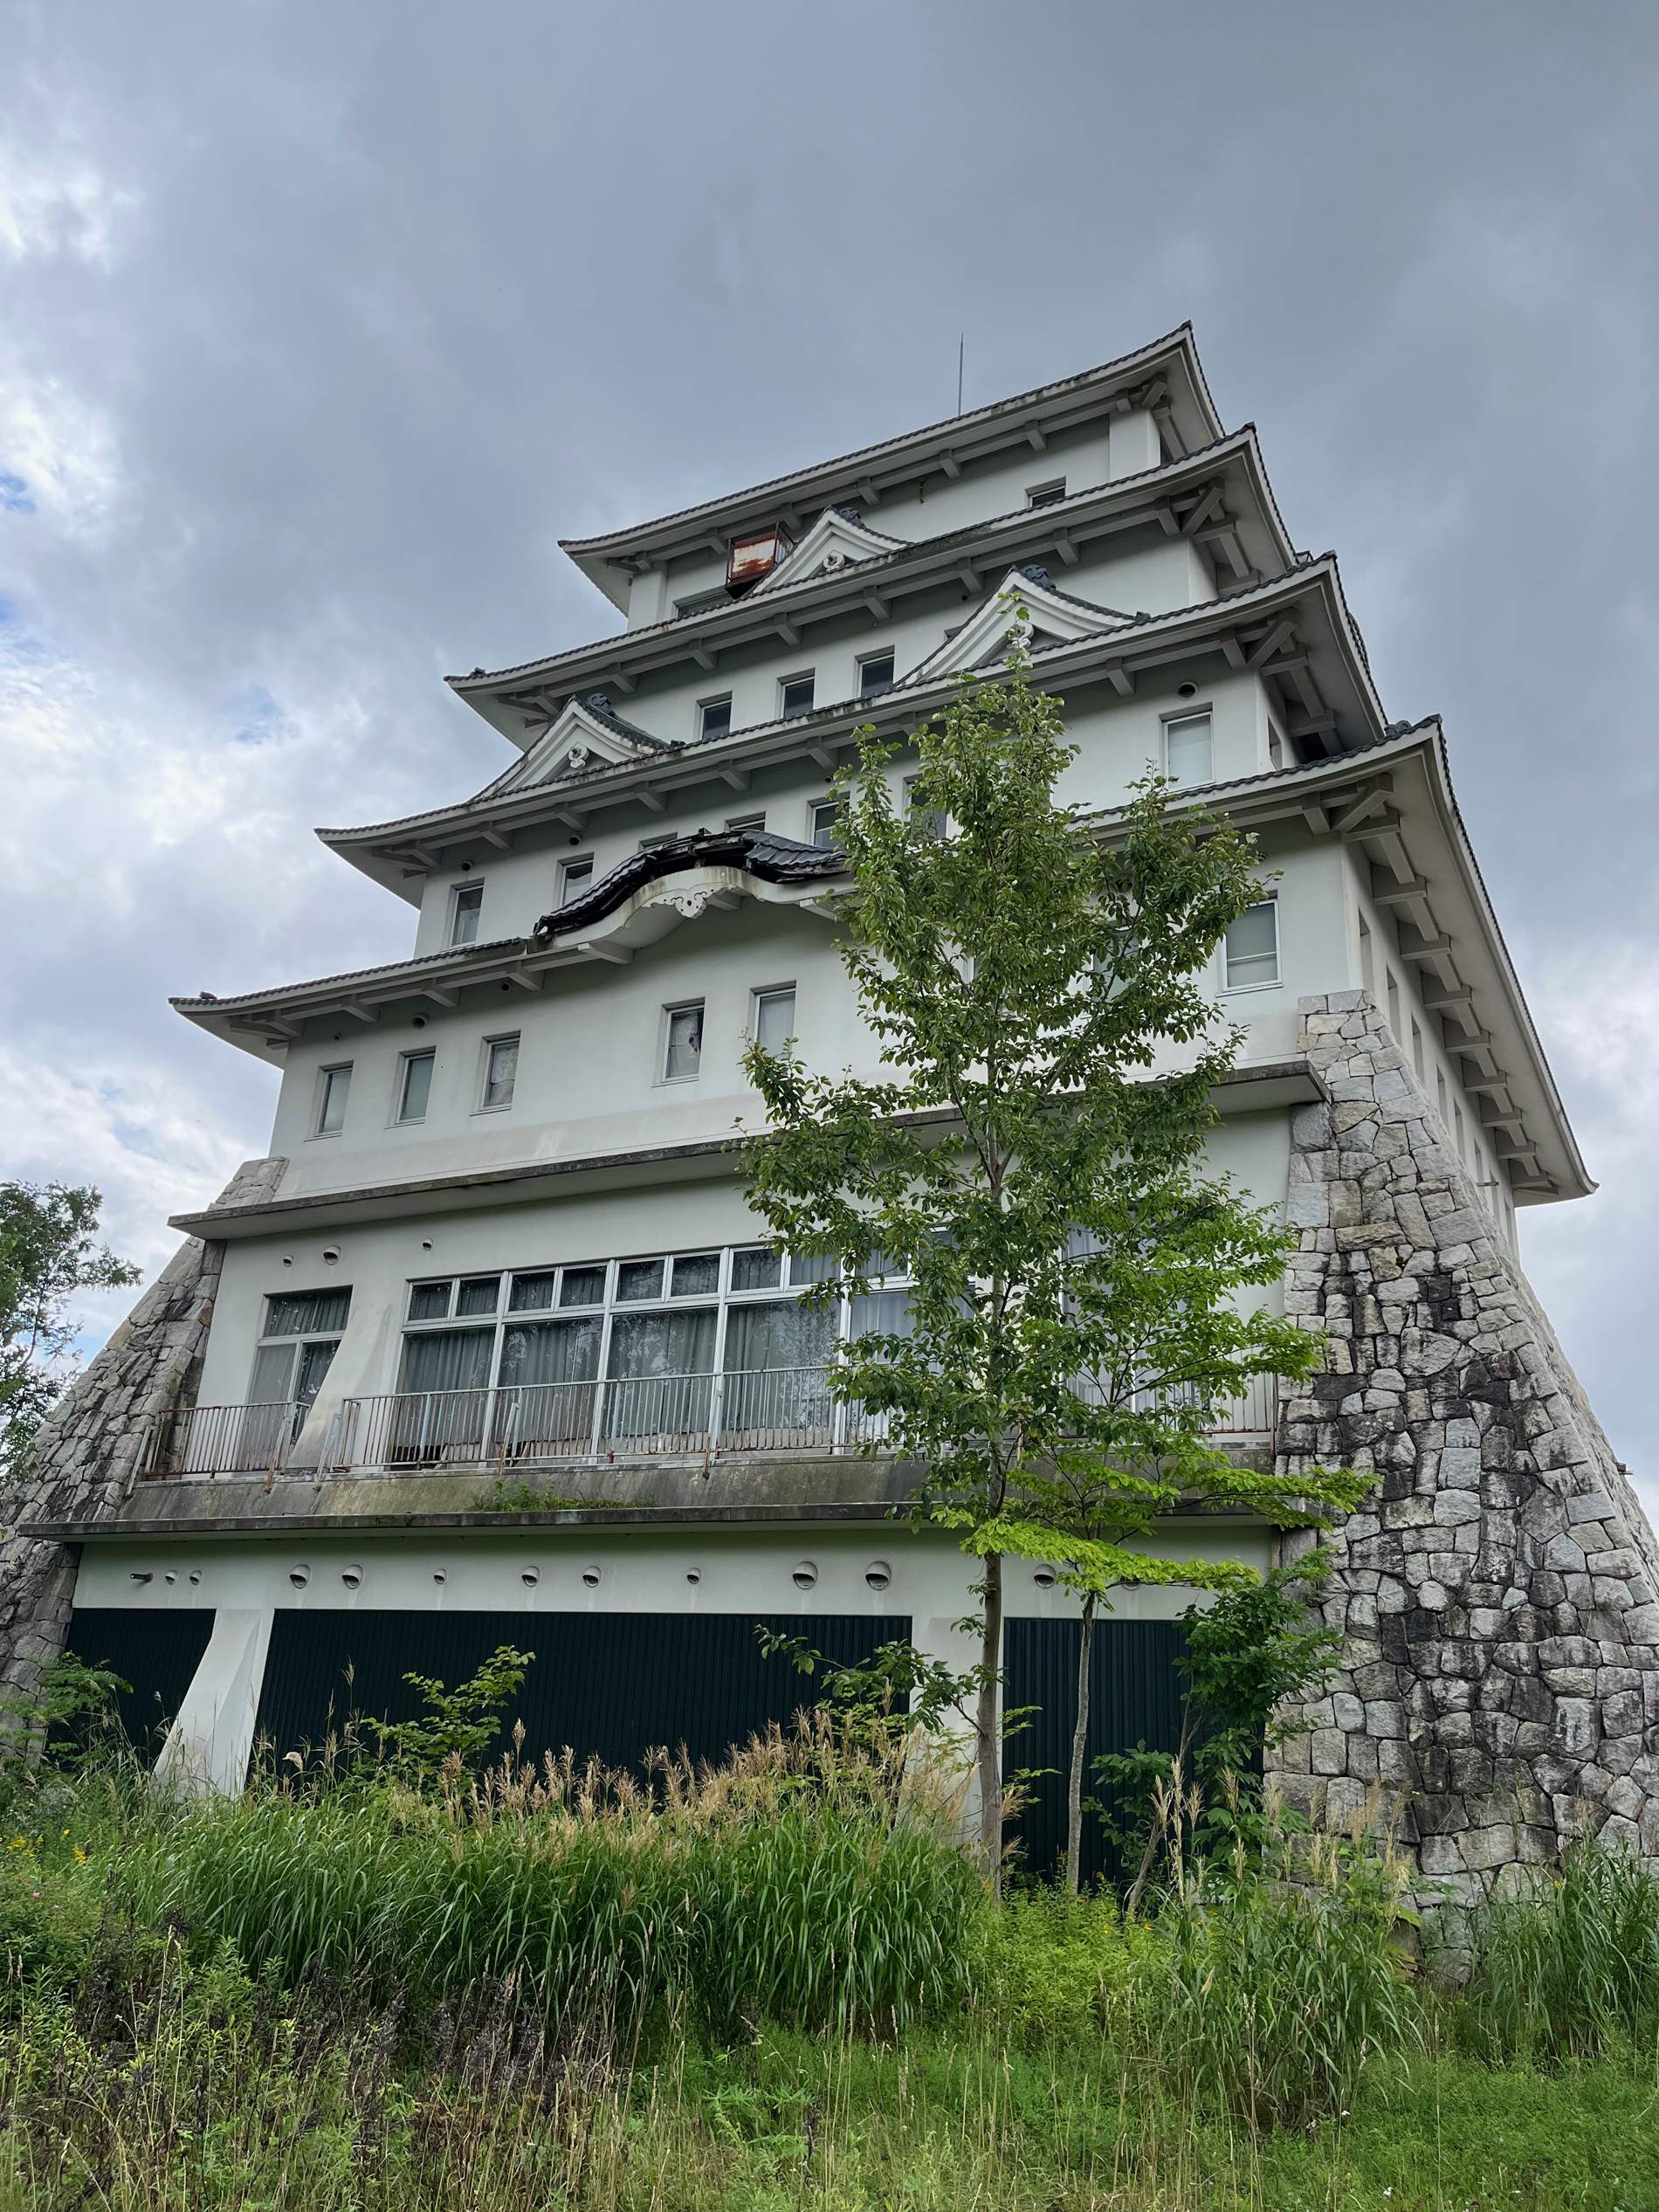 Una ganga: se vende un castillo de seis plantas en el norte de Japón por 60.000 euros